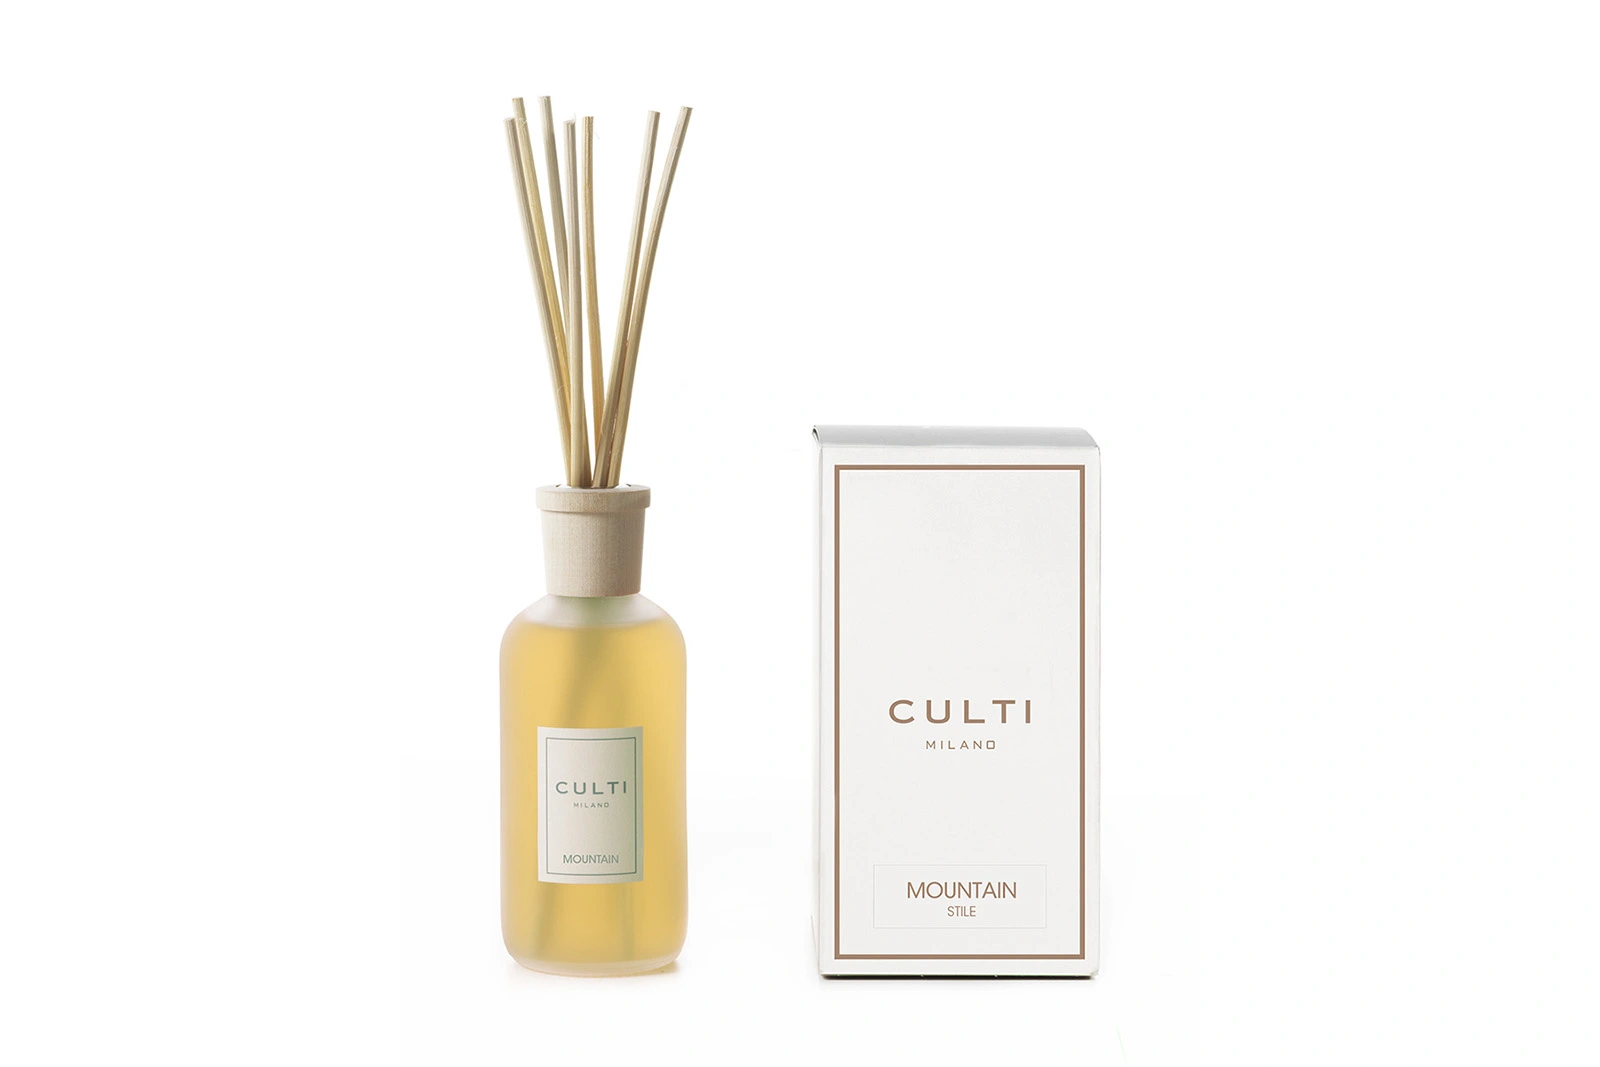 Culti Milano Mountain | Stile | Diffuser 250 ml